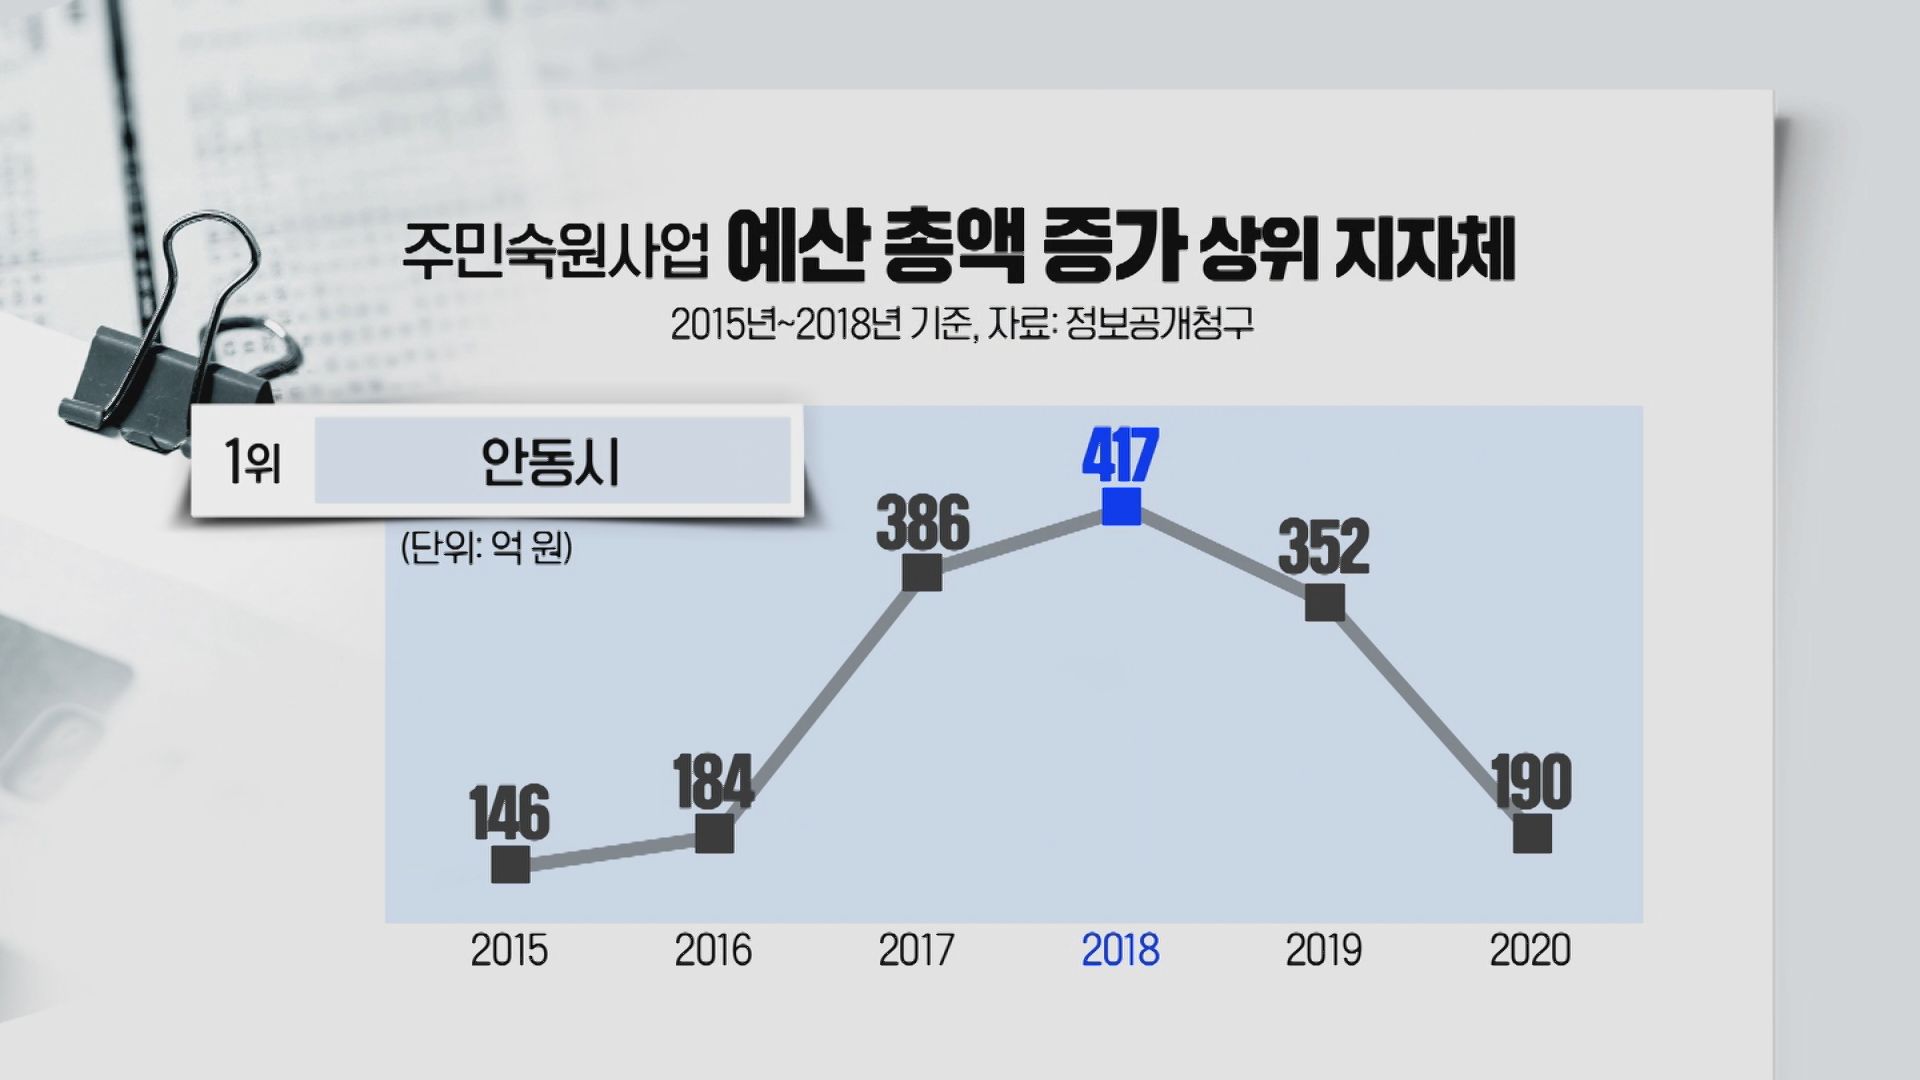 안동시는 경북도내 기초자치단체 중 2015년에서 2018년 사이 예산 총액이 가장 증가한 것으로 나타났다.